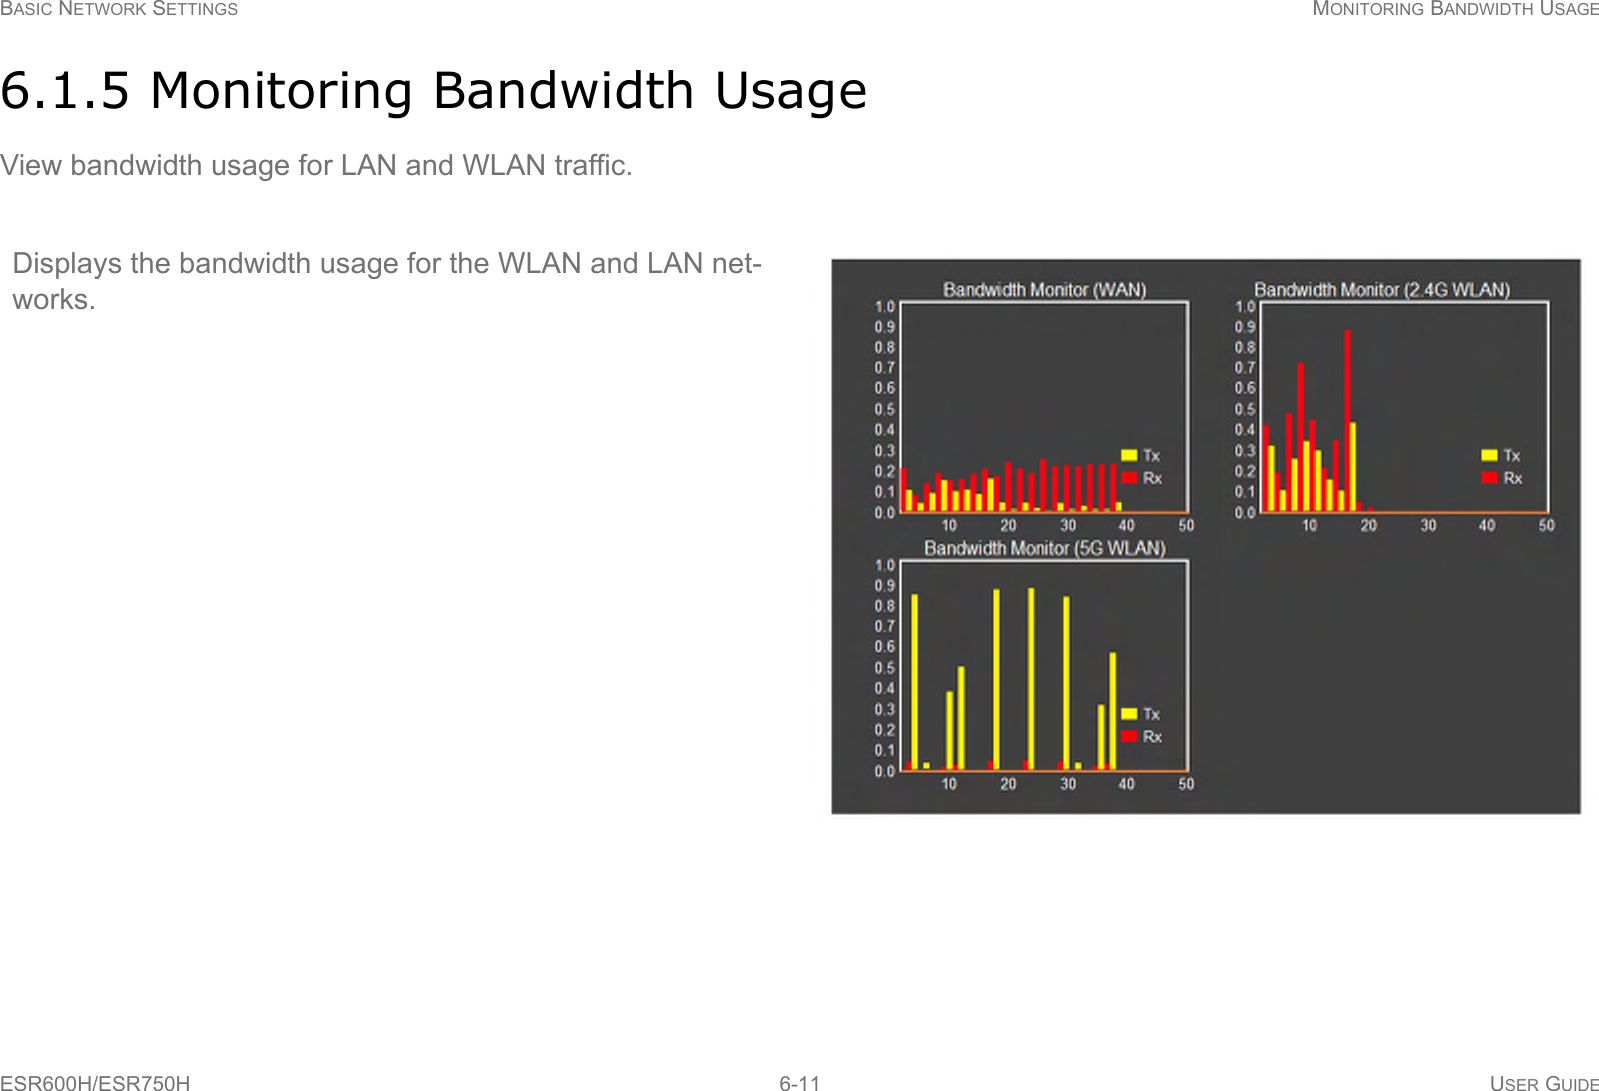 BASIC NETWORK SETTINGS MONITORING BANDWIDTH USAGEESR600H/ESR750H 6-11 USER GUIDE6.1.5 Monitoring Bandwidth UsageView bandwidth usage for LAN and WLAN traffic.Displays the bandwidth usage for the WLAN and LAN net-works.